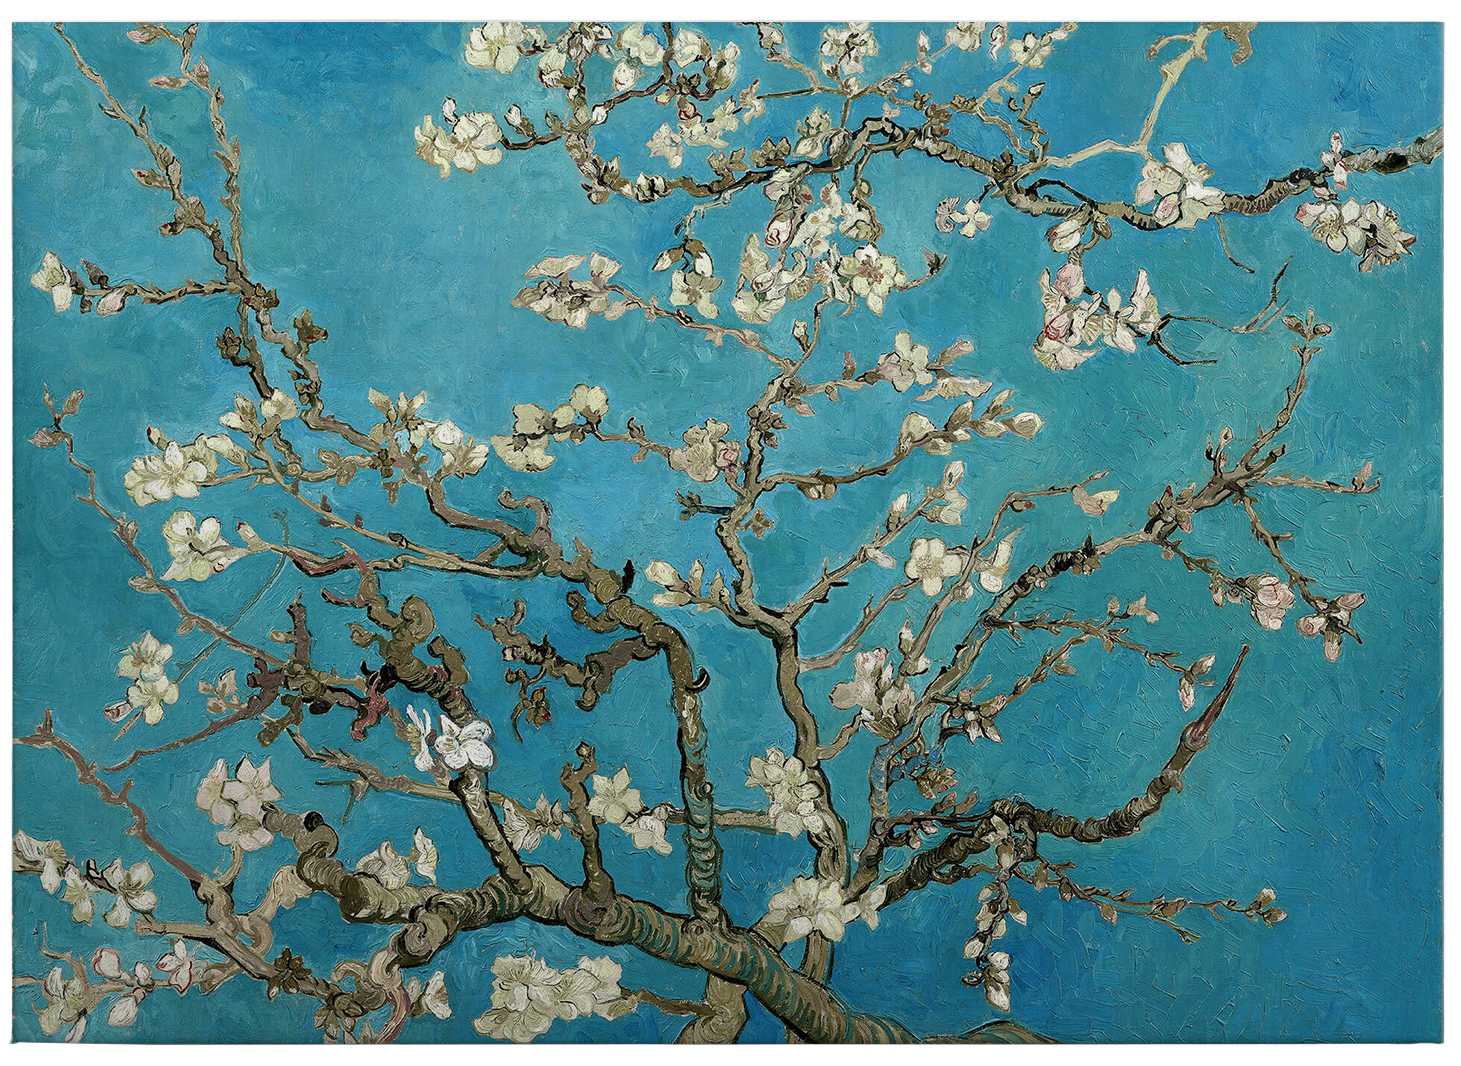             Tableau sur toile "Fleurs d'amandier" de Van Gogh - 0,70 m x 0,50 m
        